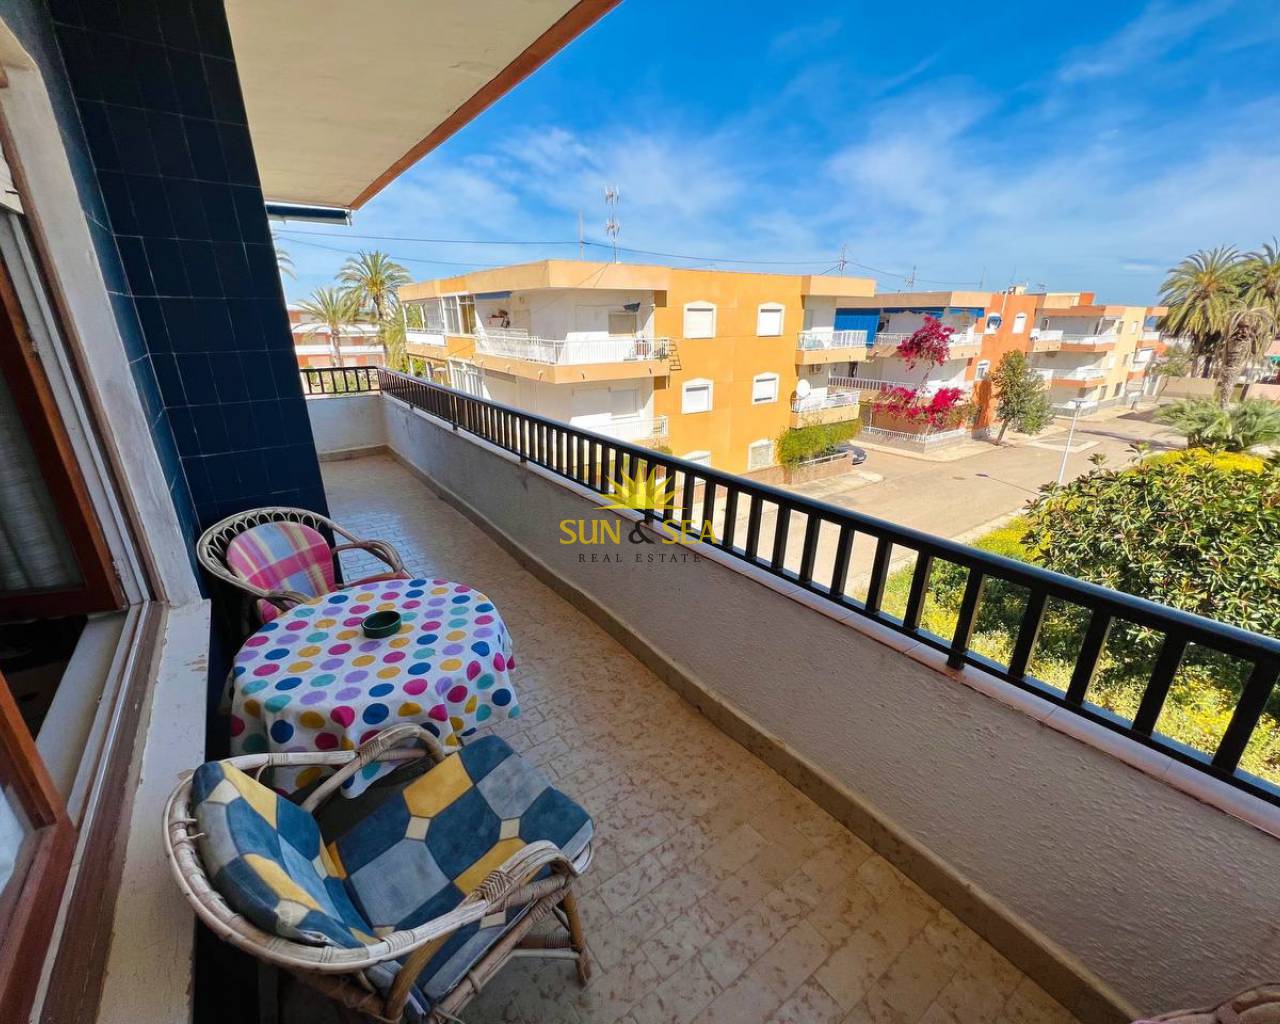 Apartment - Аренда на длительный срок - Cartagena - Mar de cristal